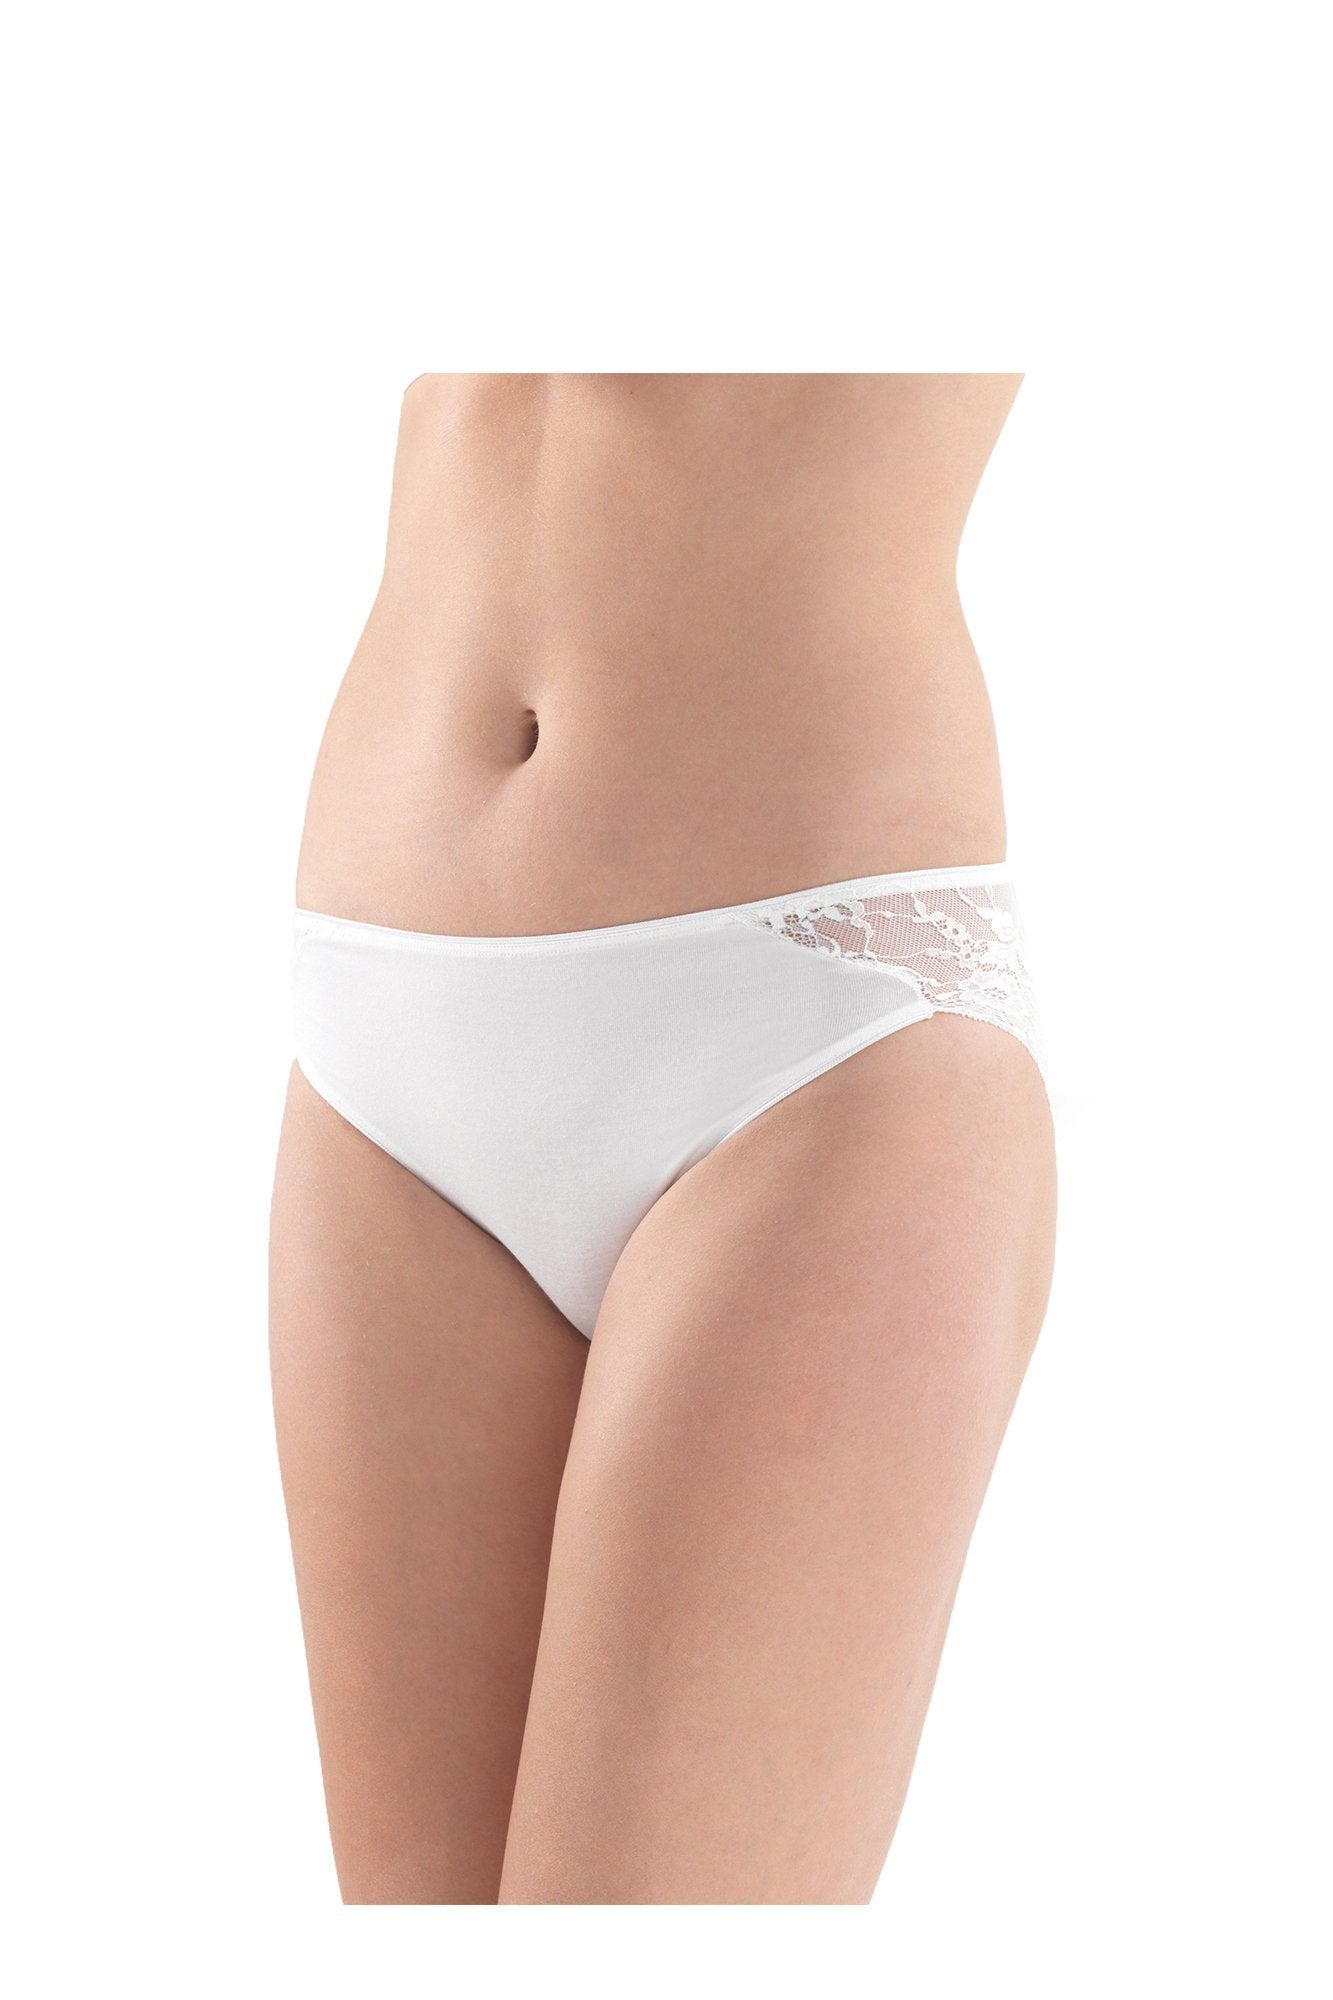 Ladies' Slip-1349 underwear blackspade White L 94% Modal 6% Elastane